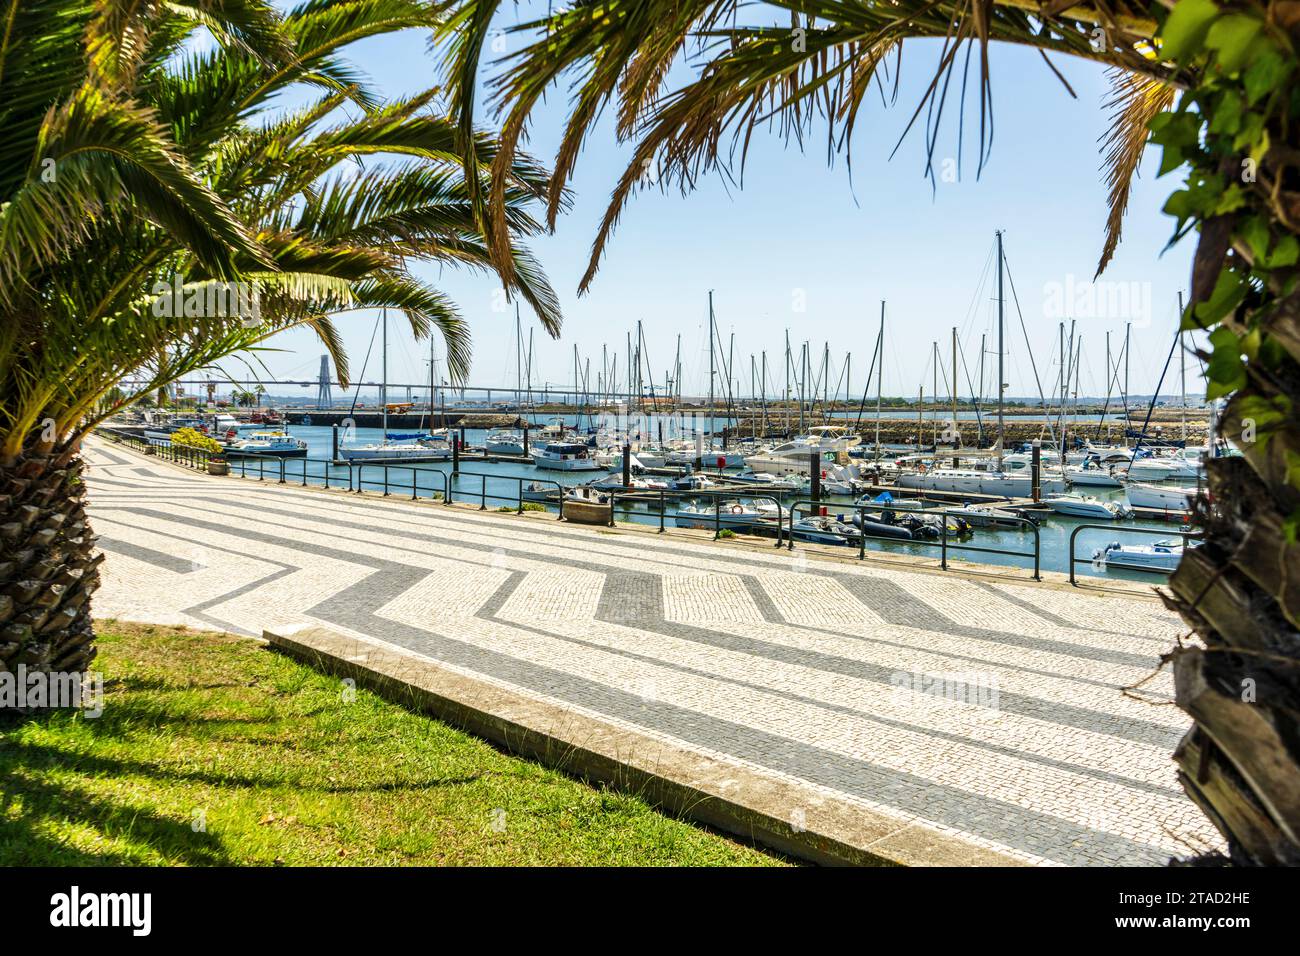 Wunderschöne Aussicht auf einem Dock mit Booten und Yachten, Figueira da foz, Portugal. Stockfoto